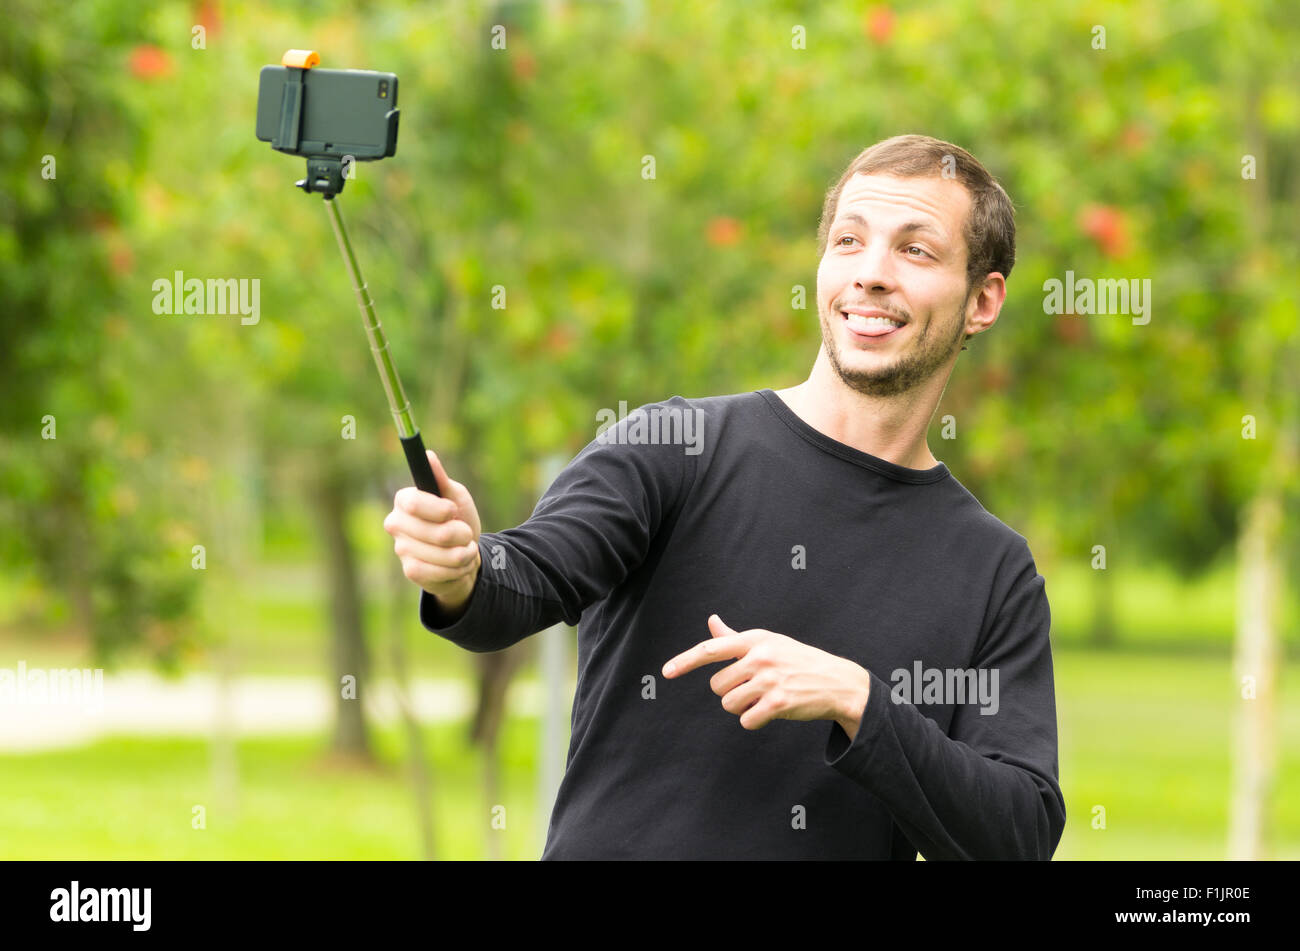 Hispanic Mann posiert mit Selfie Stick in Park Umgebung nehmen ein Foto von sich lächelnd Stockfoto